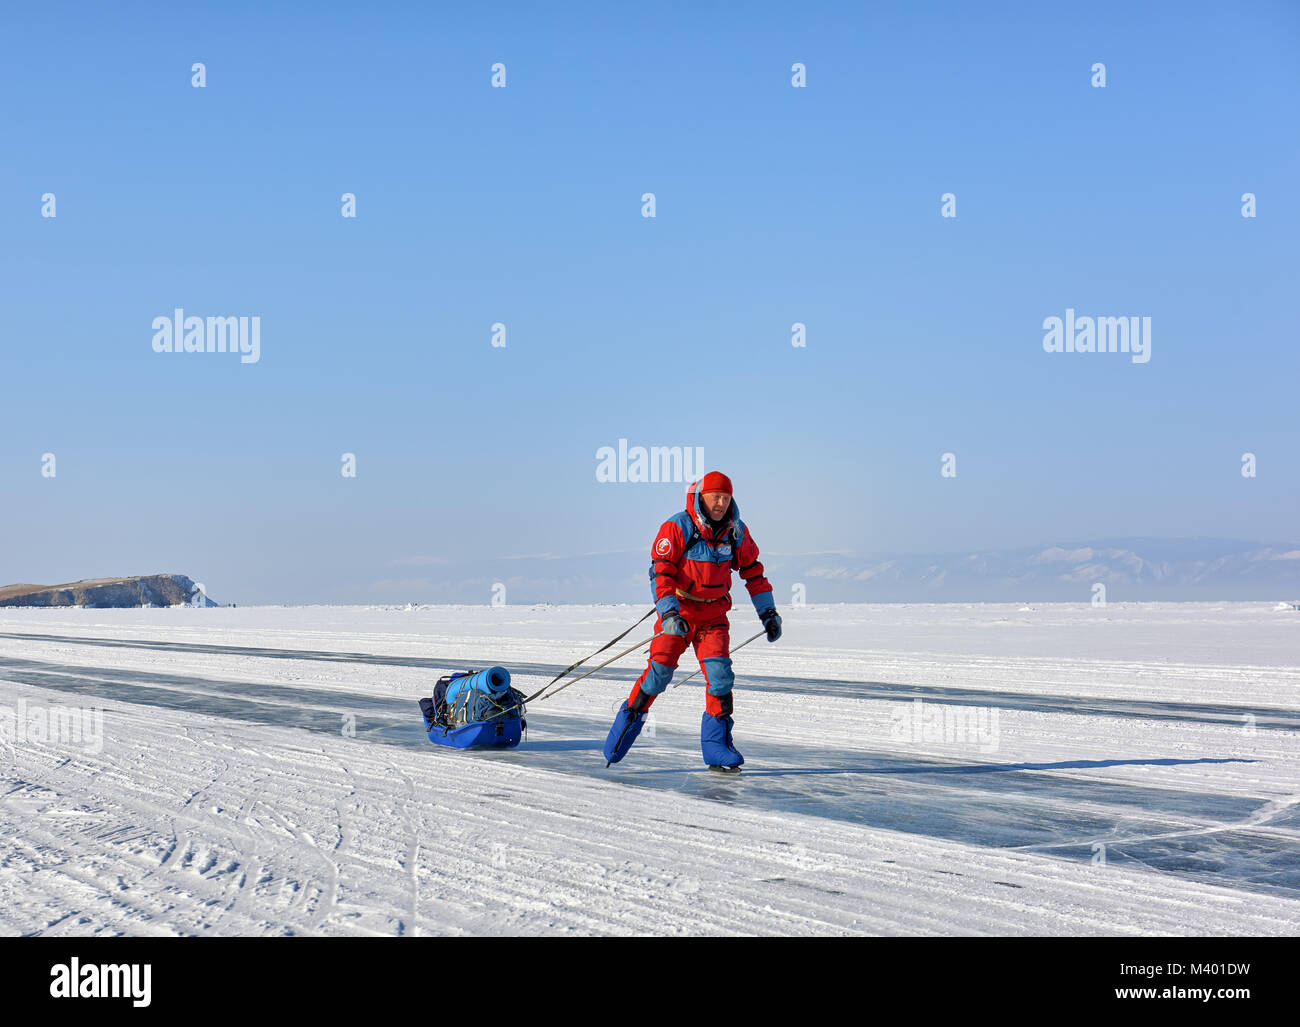 Le lac Baïkal, région d'Irkoutsk, RUSSIE - 08 mars 2017 : l'homme à une orange salopette polaire est le patinage. Vacances actives en hiver en Sibérie Banque D'Images